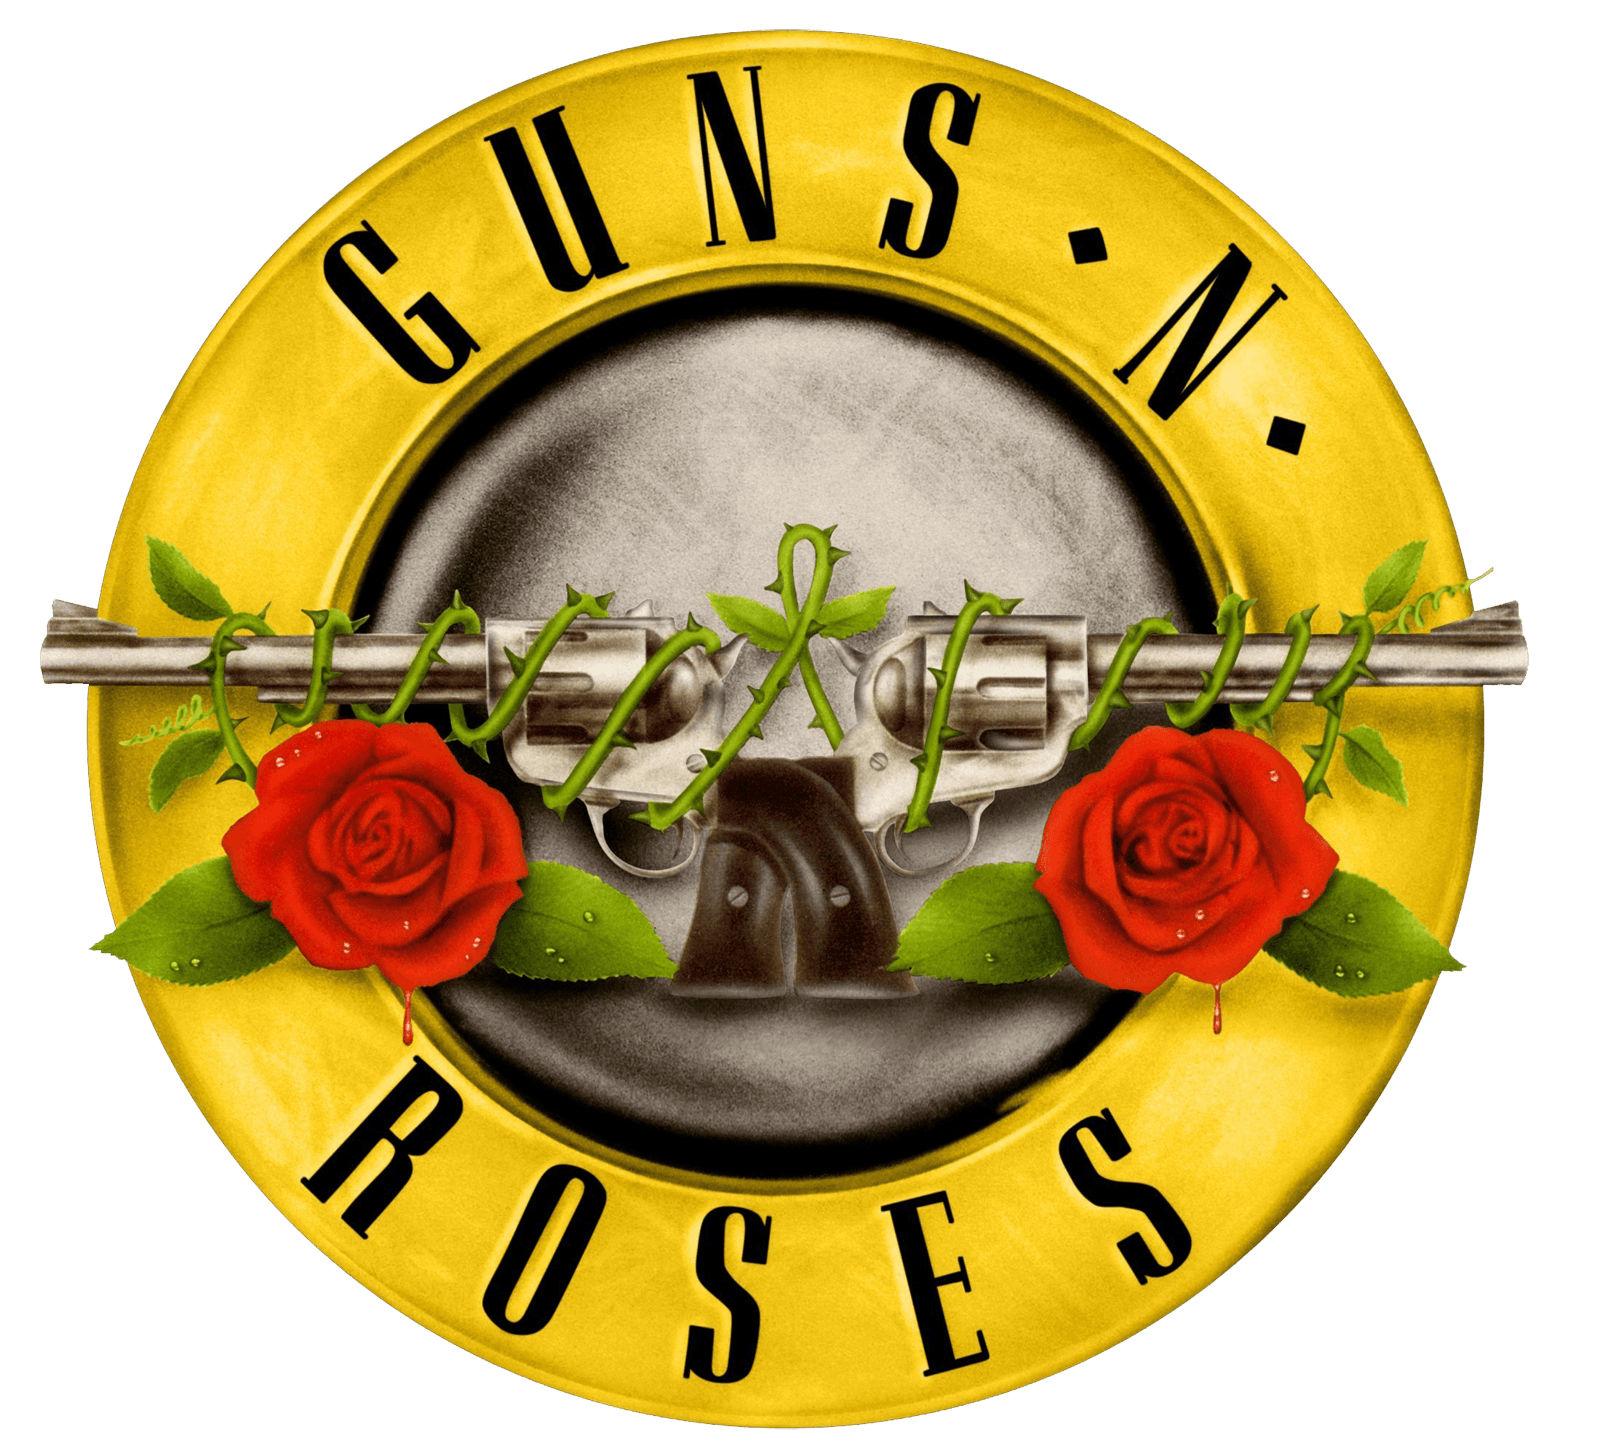 Guns and Roses Band Logo - Guns N'Roses Logo, Guns N'Roses Symbol Meaning, History and Evolution